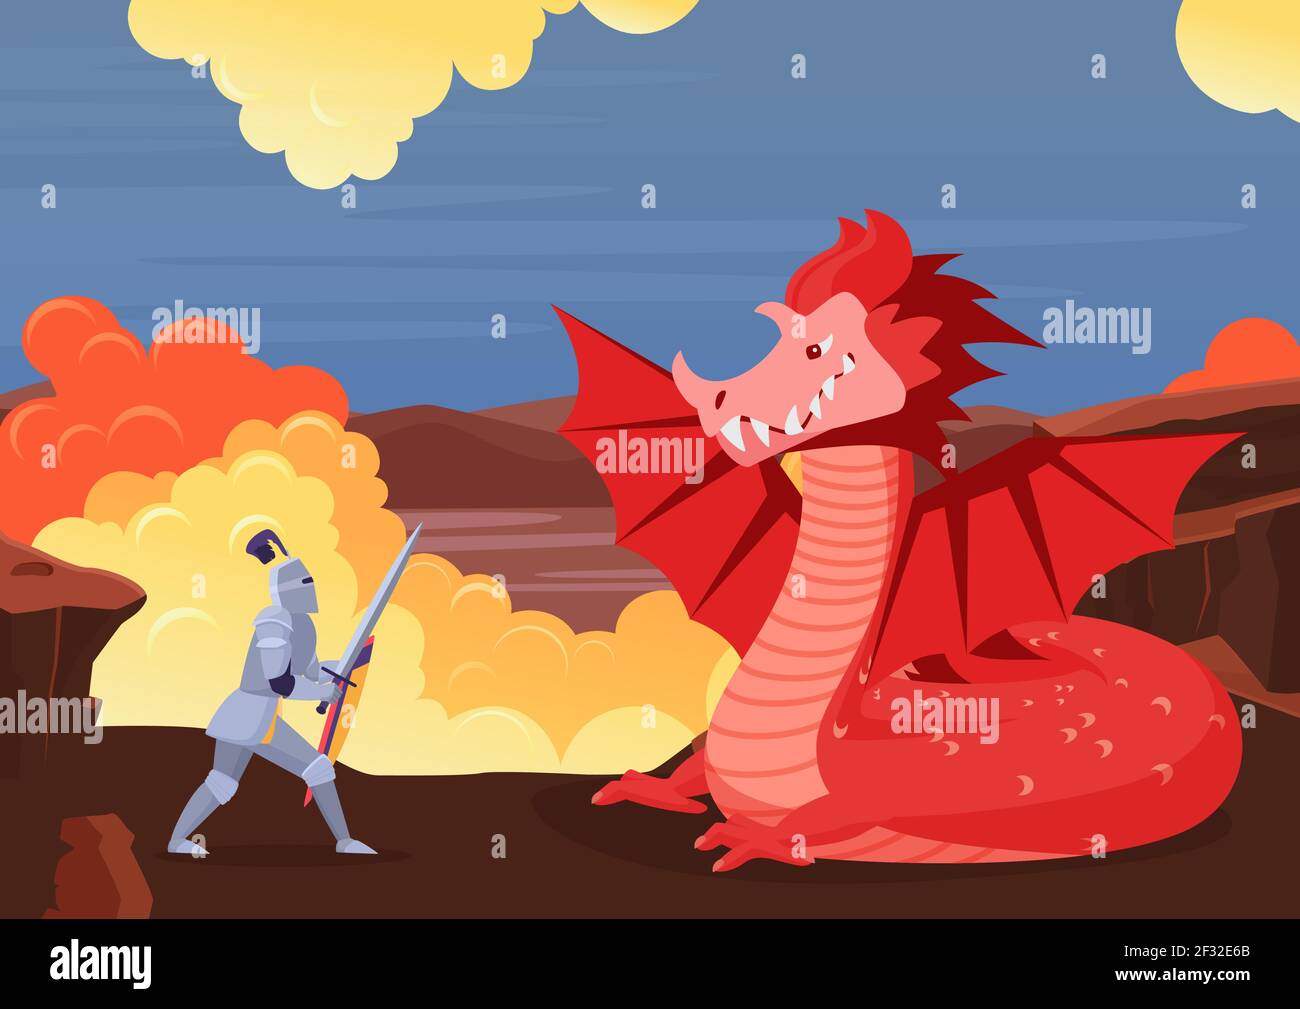 Le chevalier courageux combat le dragon, le paysage de conte de fées avec le combat entre guerrier et monstre Illustration de Vecteur